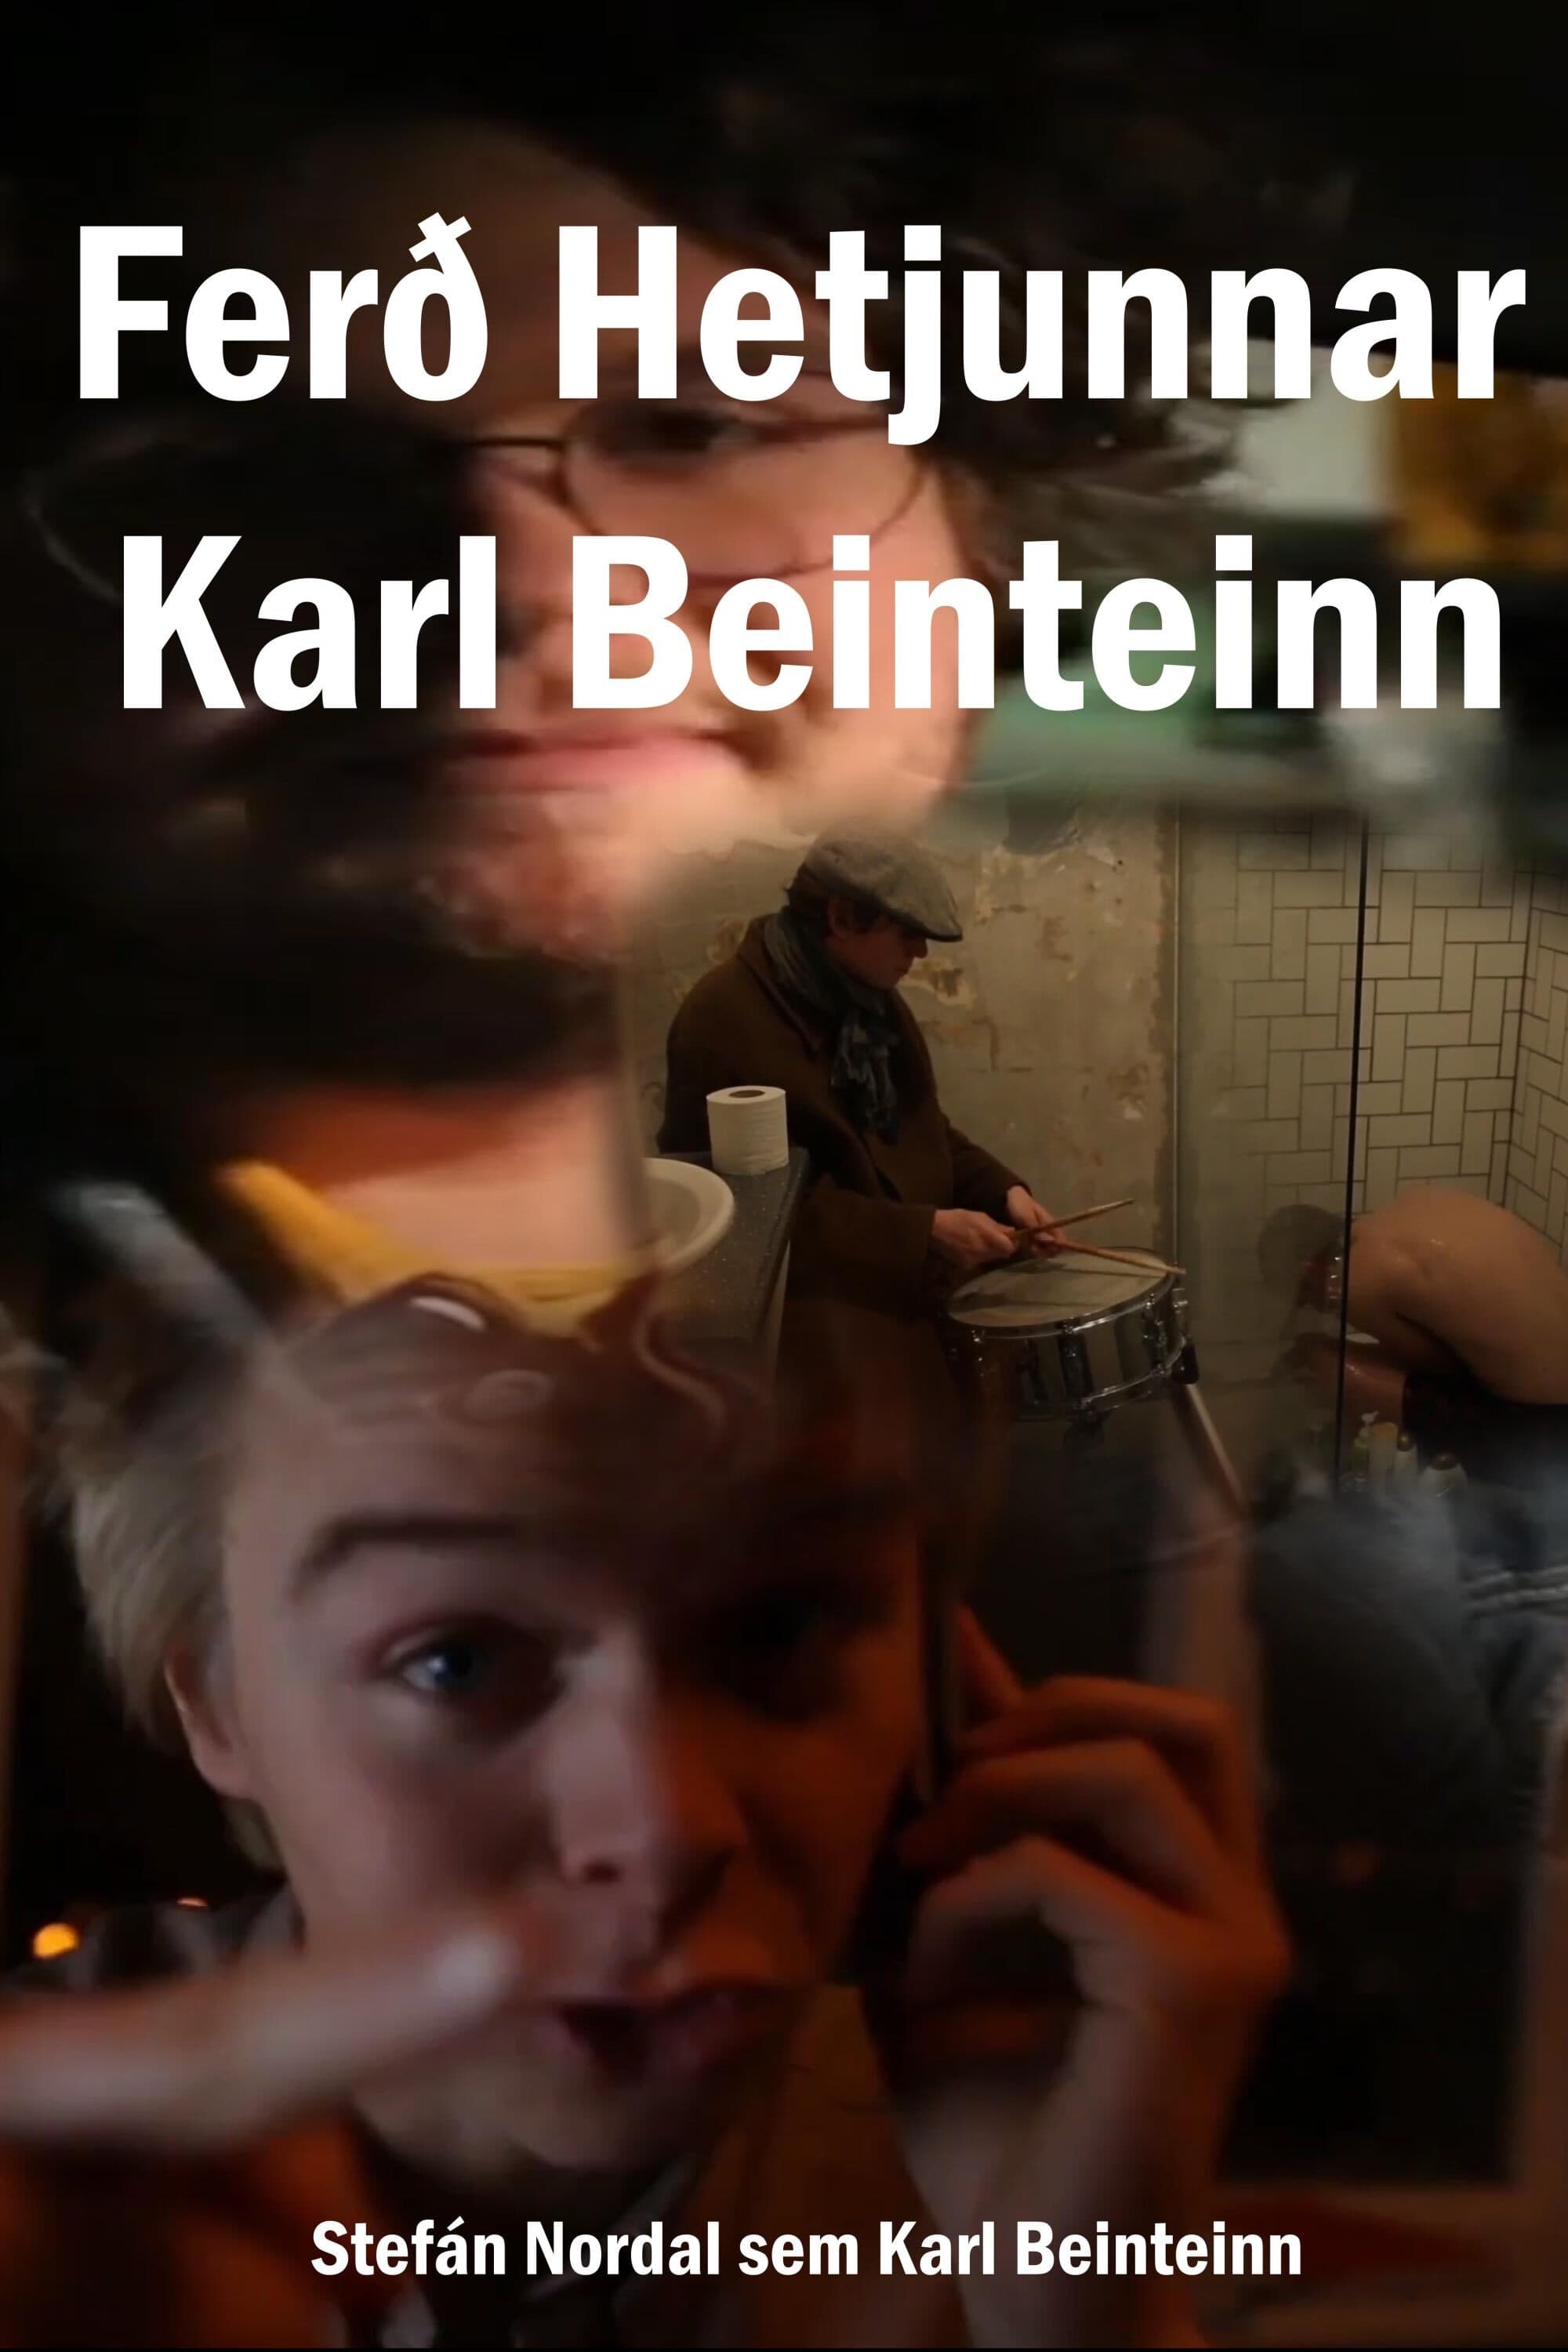 The Heroes Journey - Karl Beinteinn